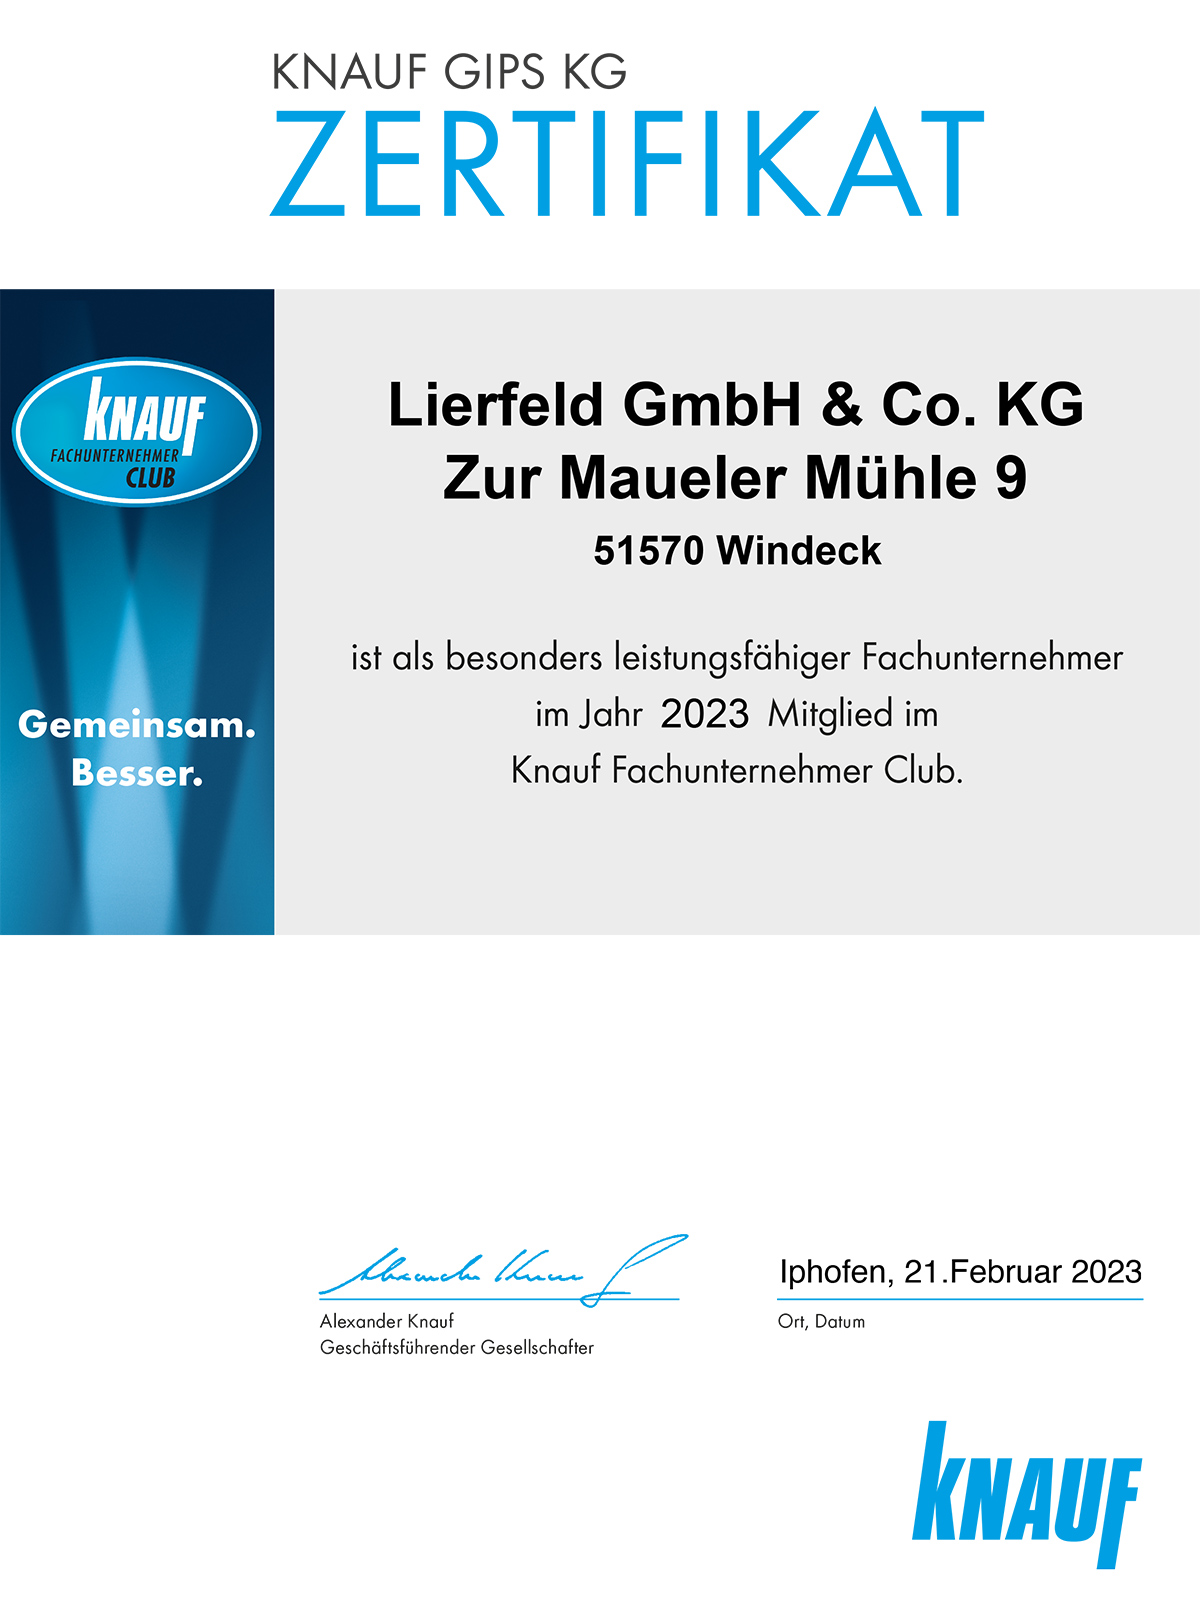 Zertifikate Lierfeld GmbH & Co. KG